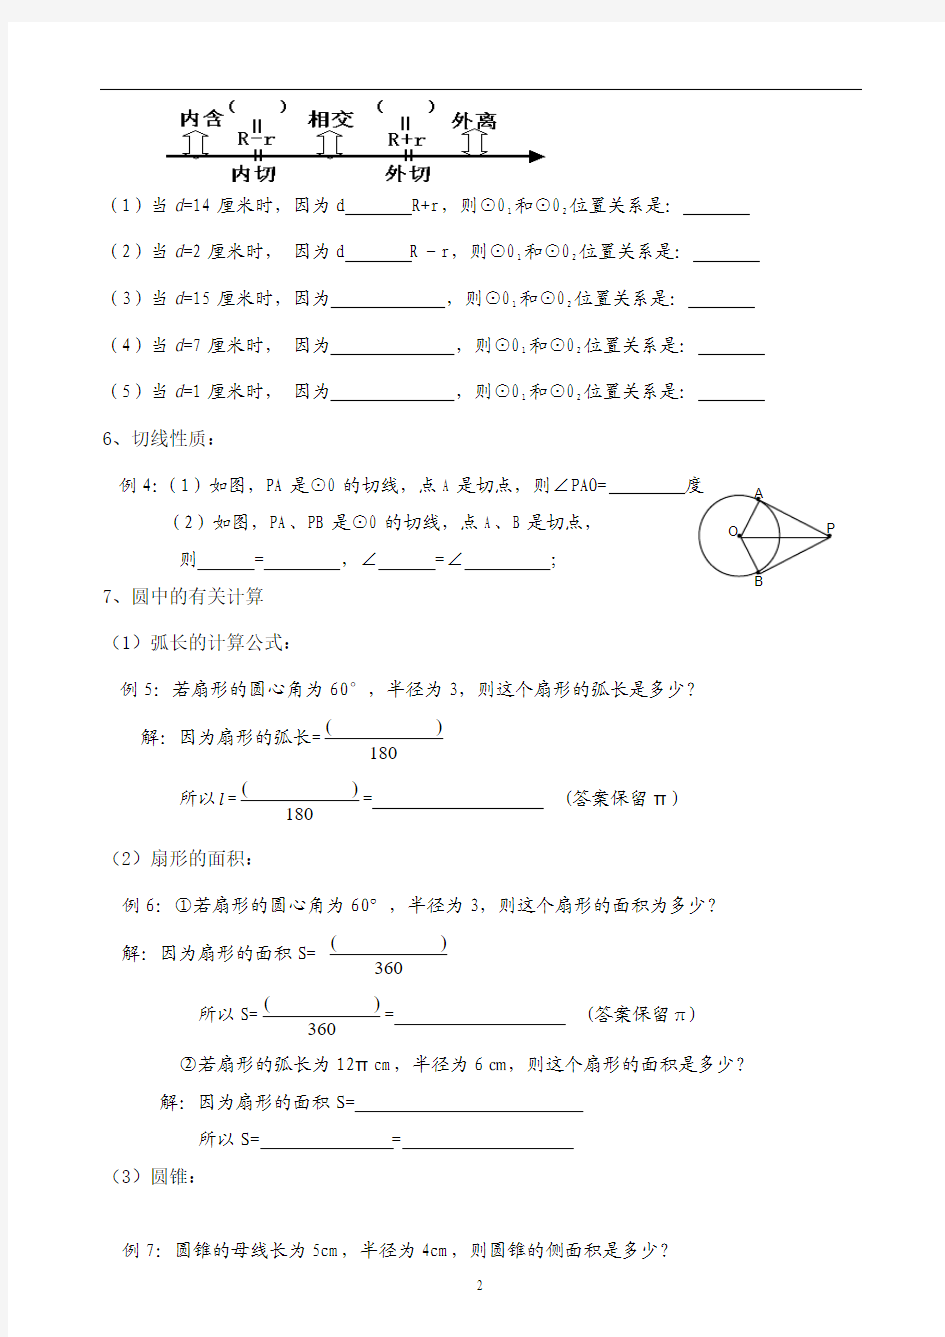 2015北京中考数学复习资料专题(圆)